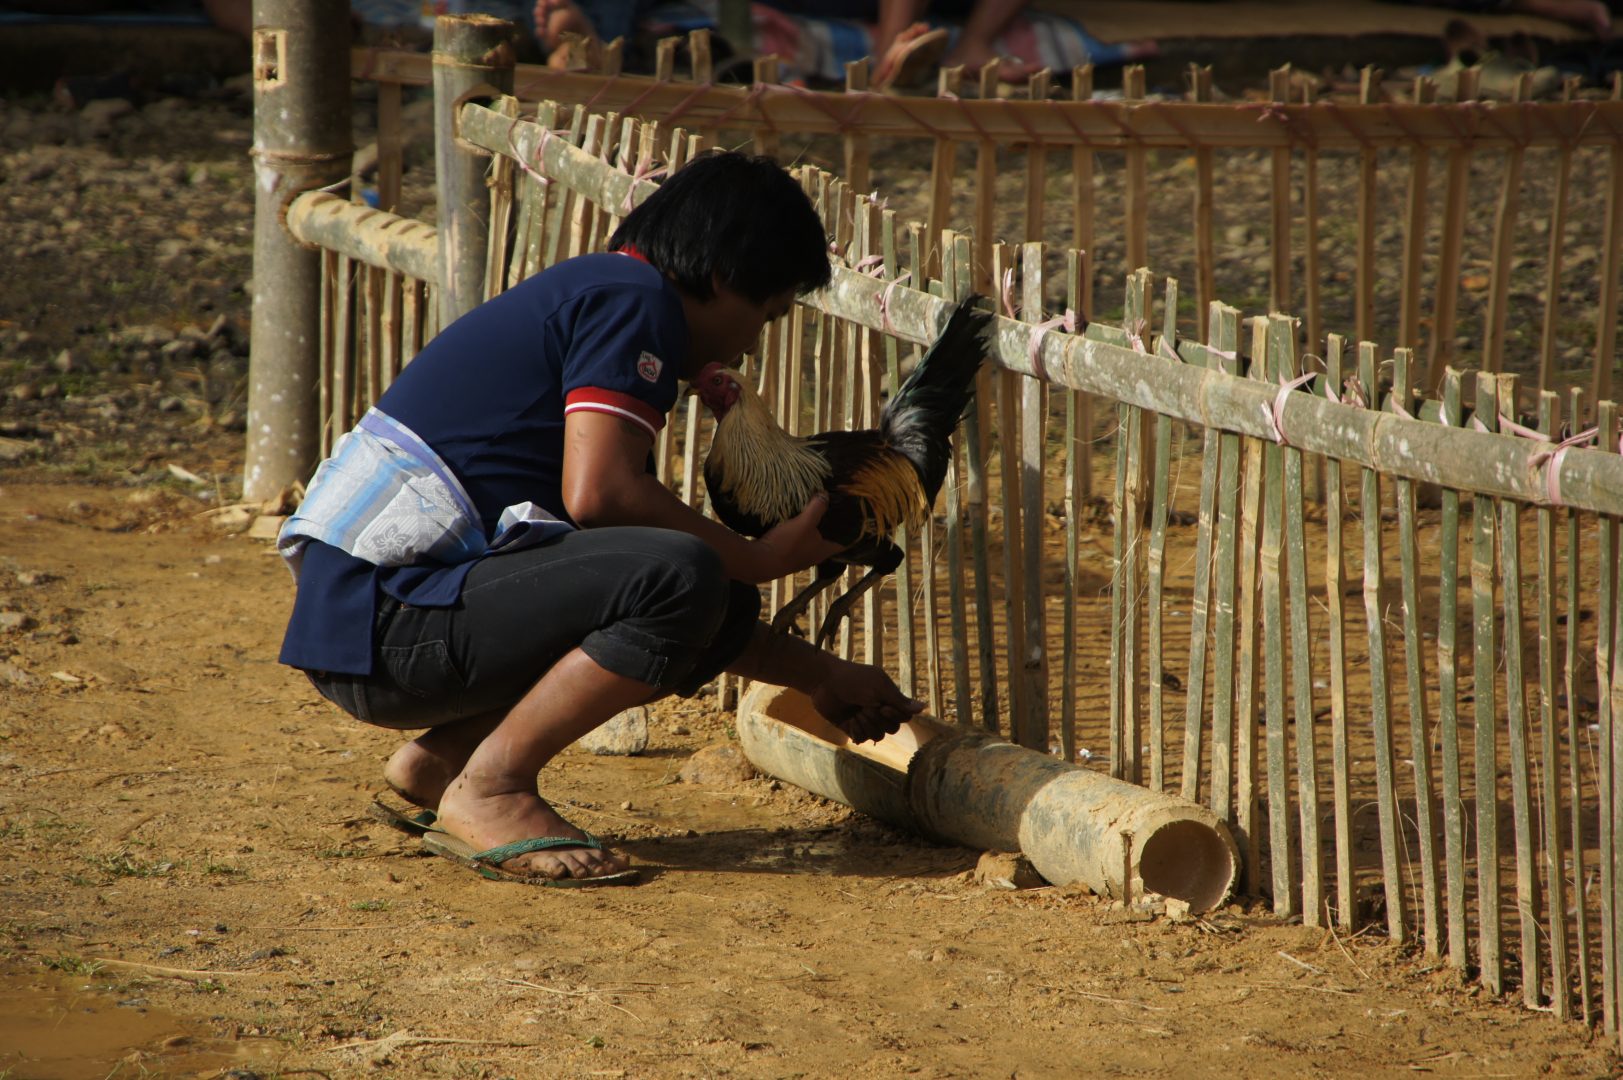 Préparation des coqs rites funéraires sur l'île de Sulawesi